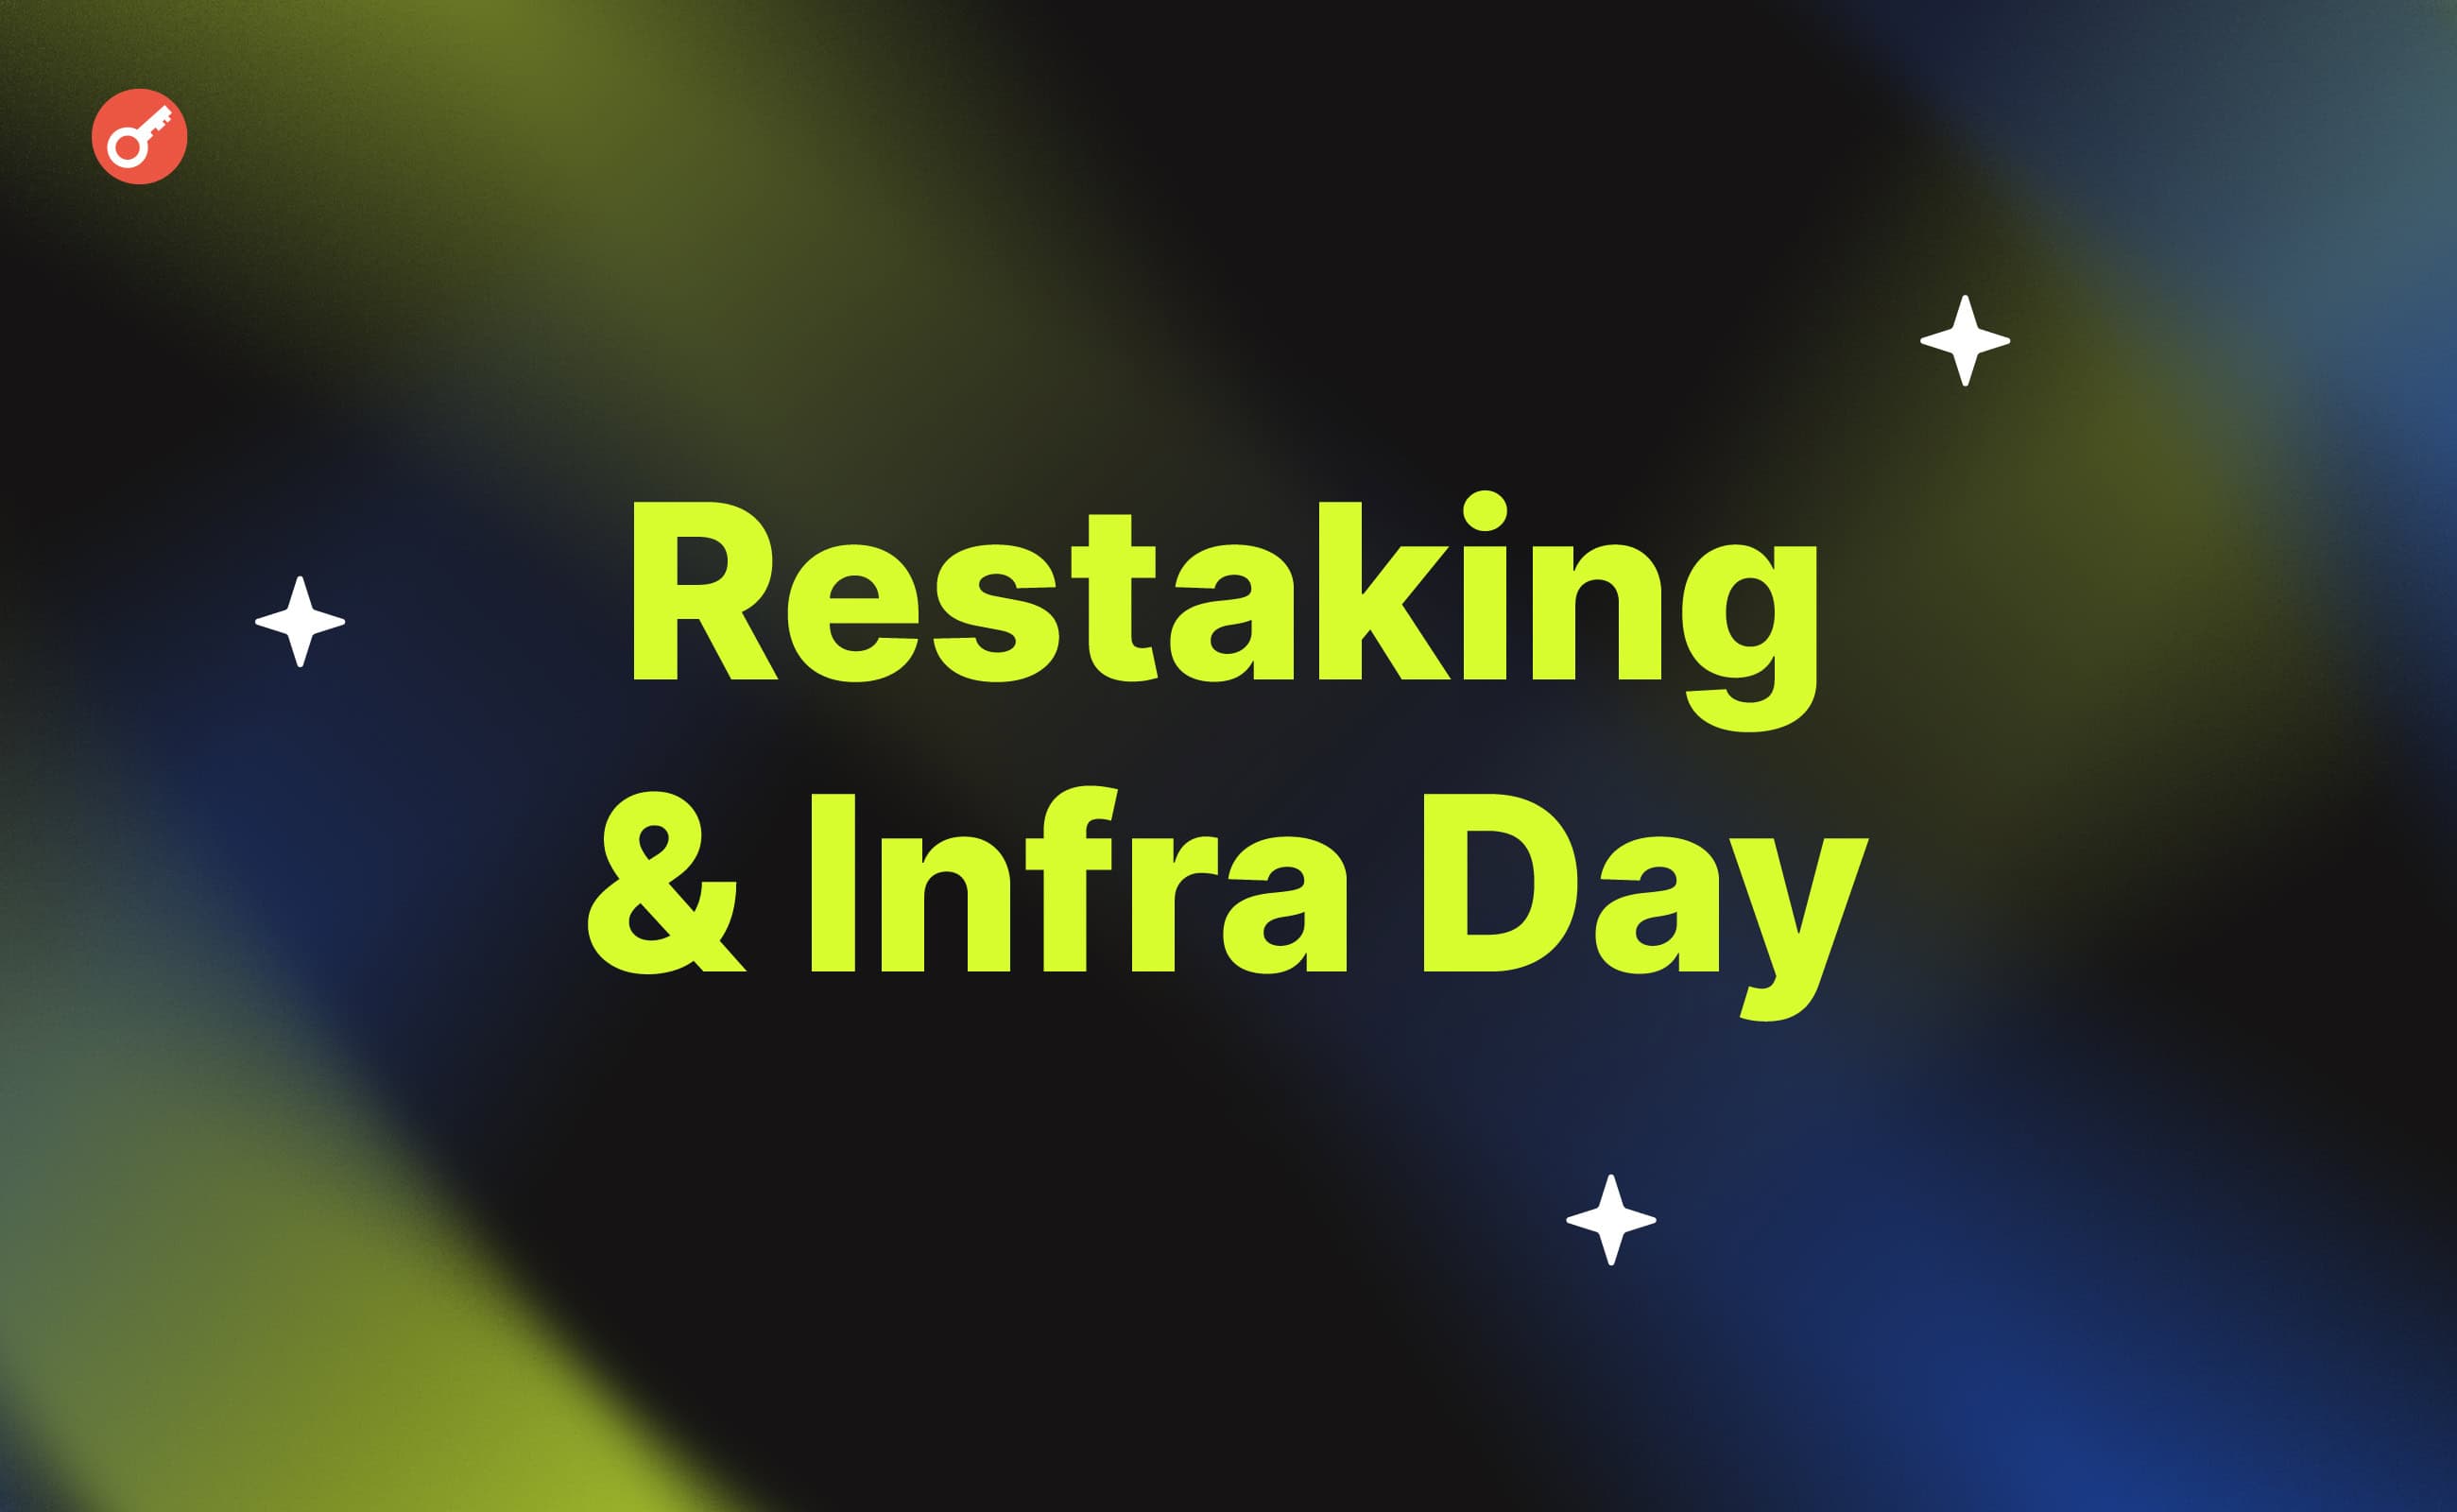 Restaking & Infra Day: о чем говорили лидеры сегмента рестейкинга в Дубае. Заглавный коллаж новости.